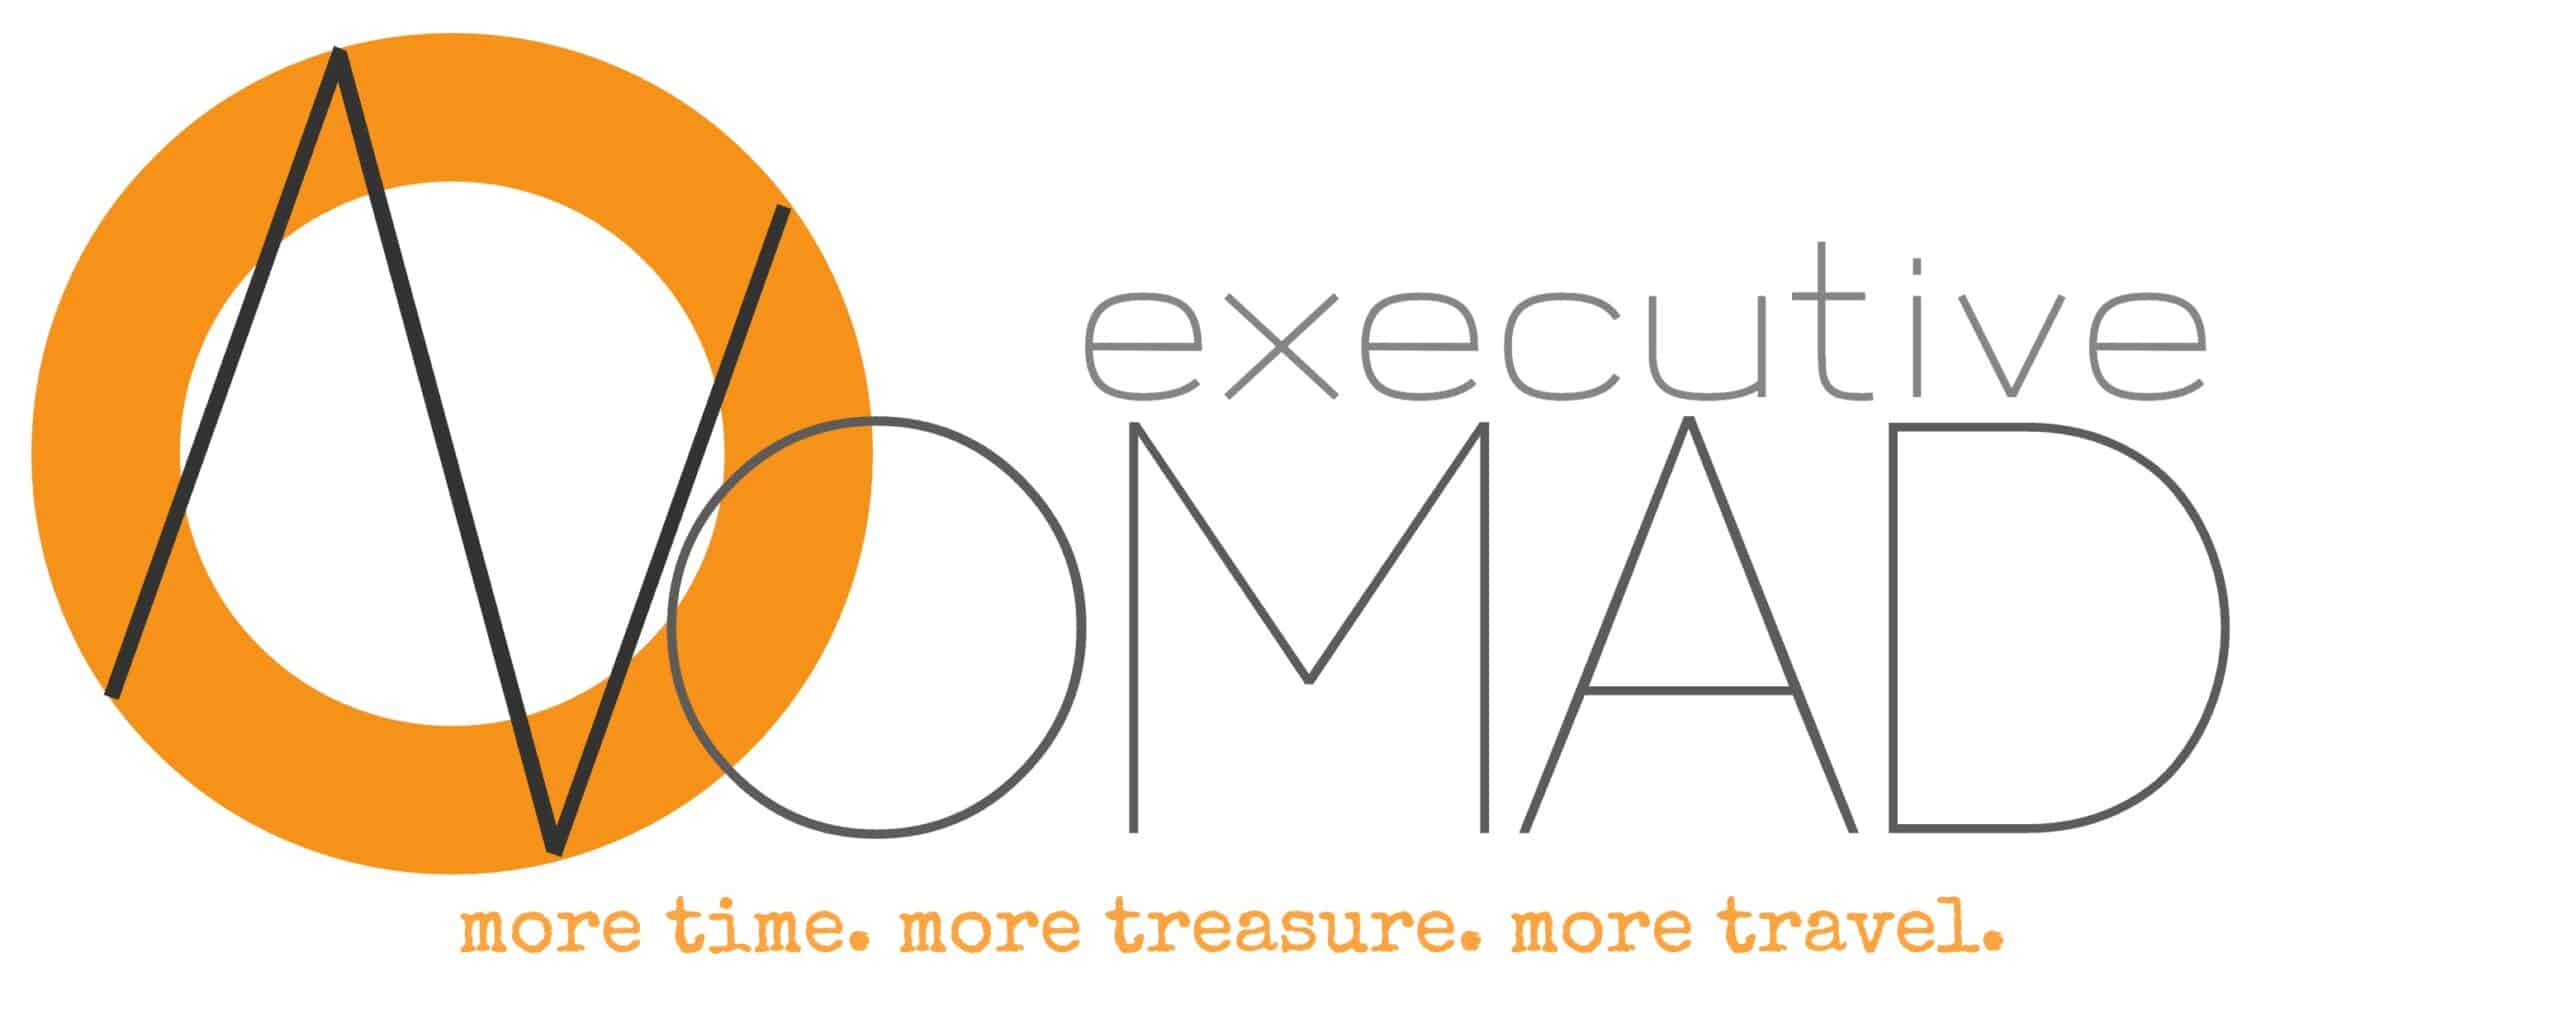 Executive Nomad Logo